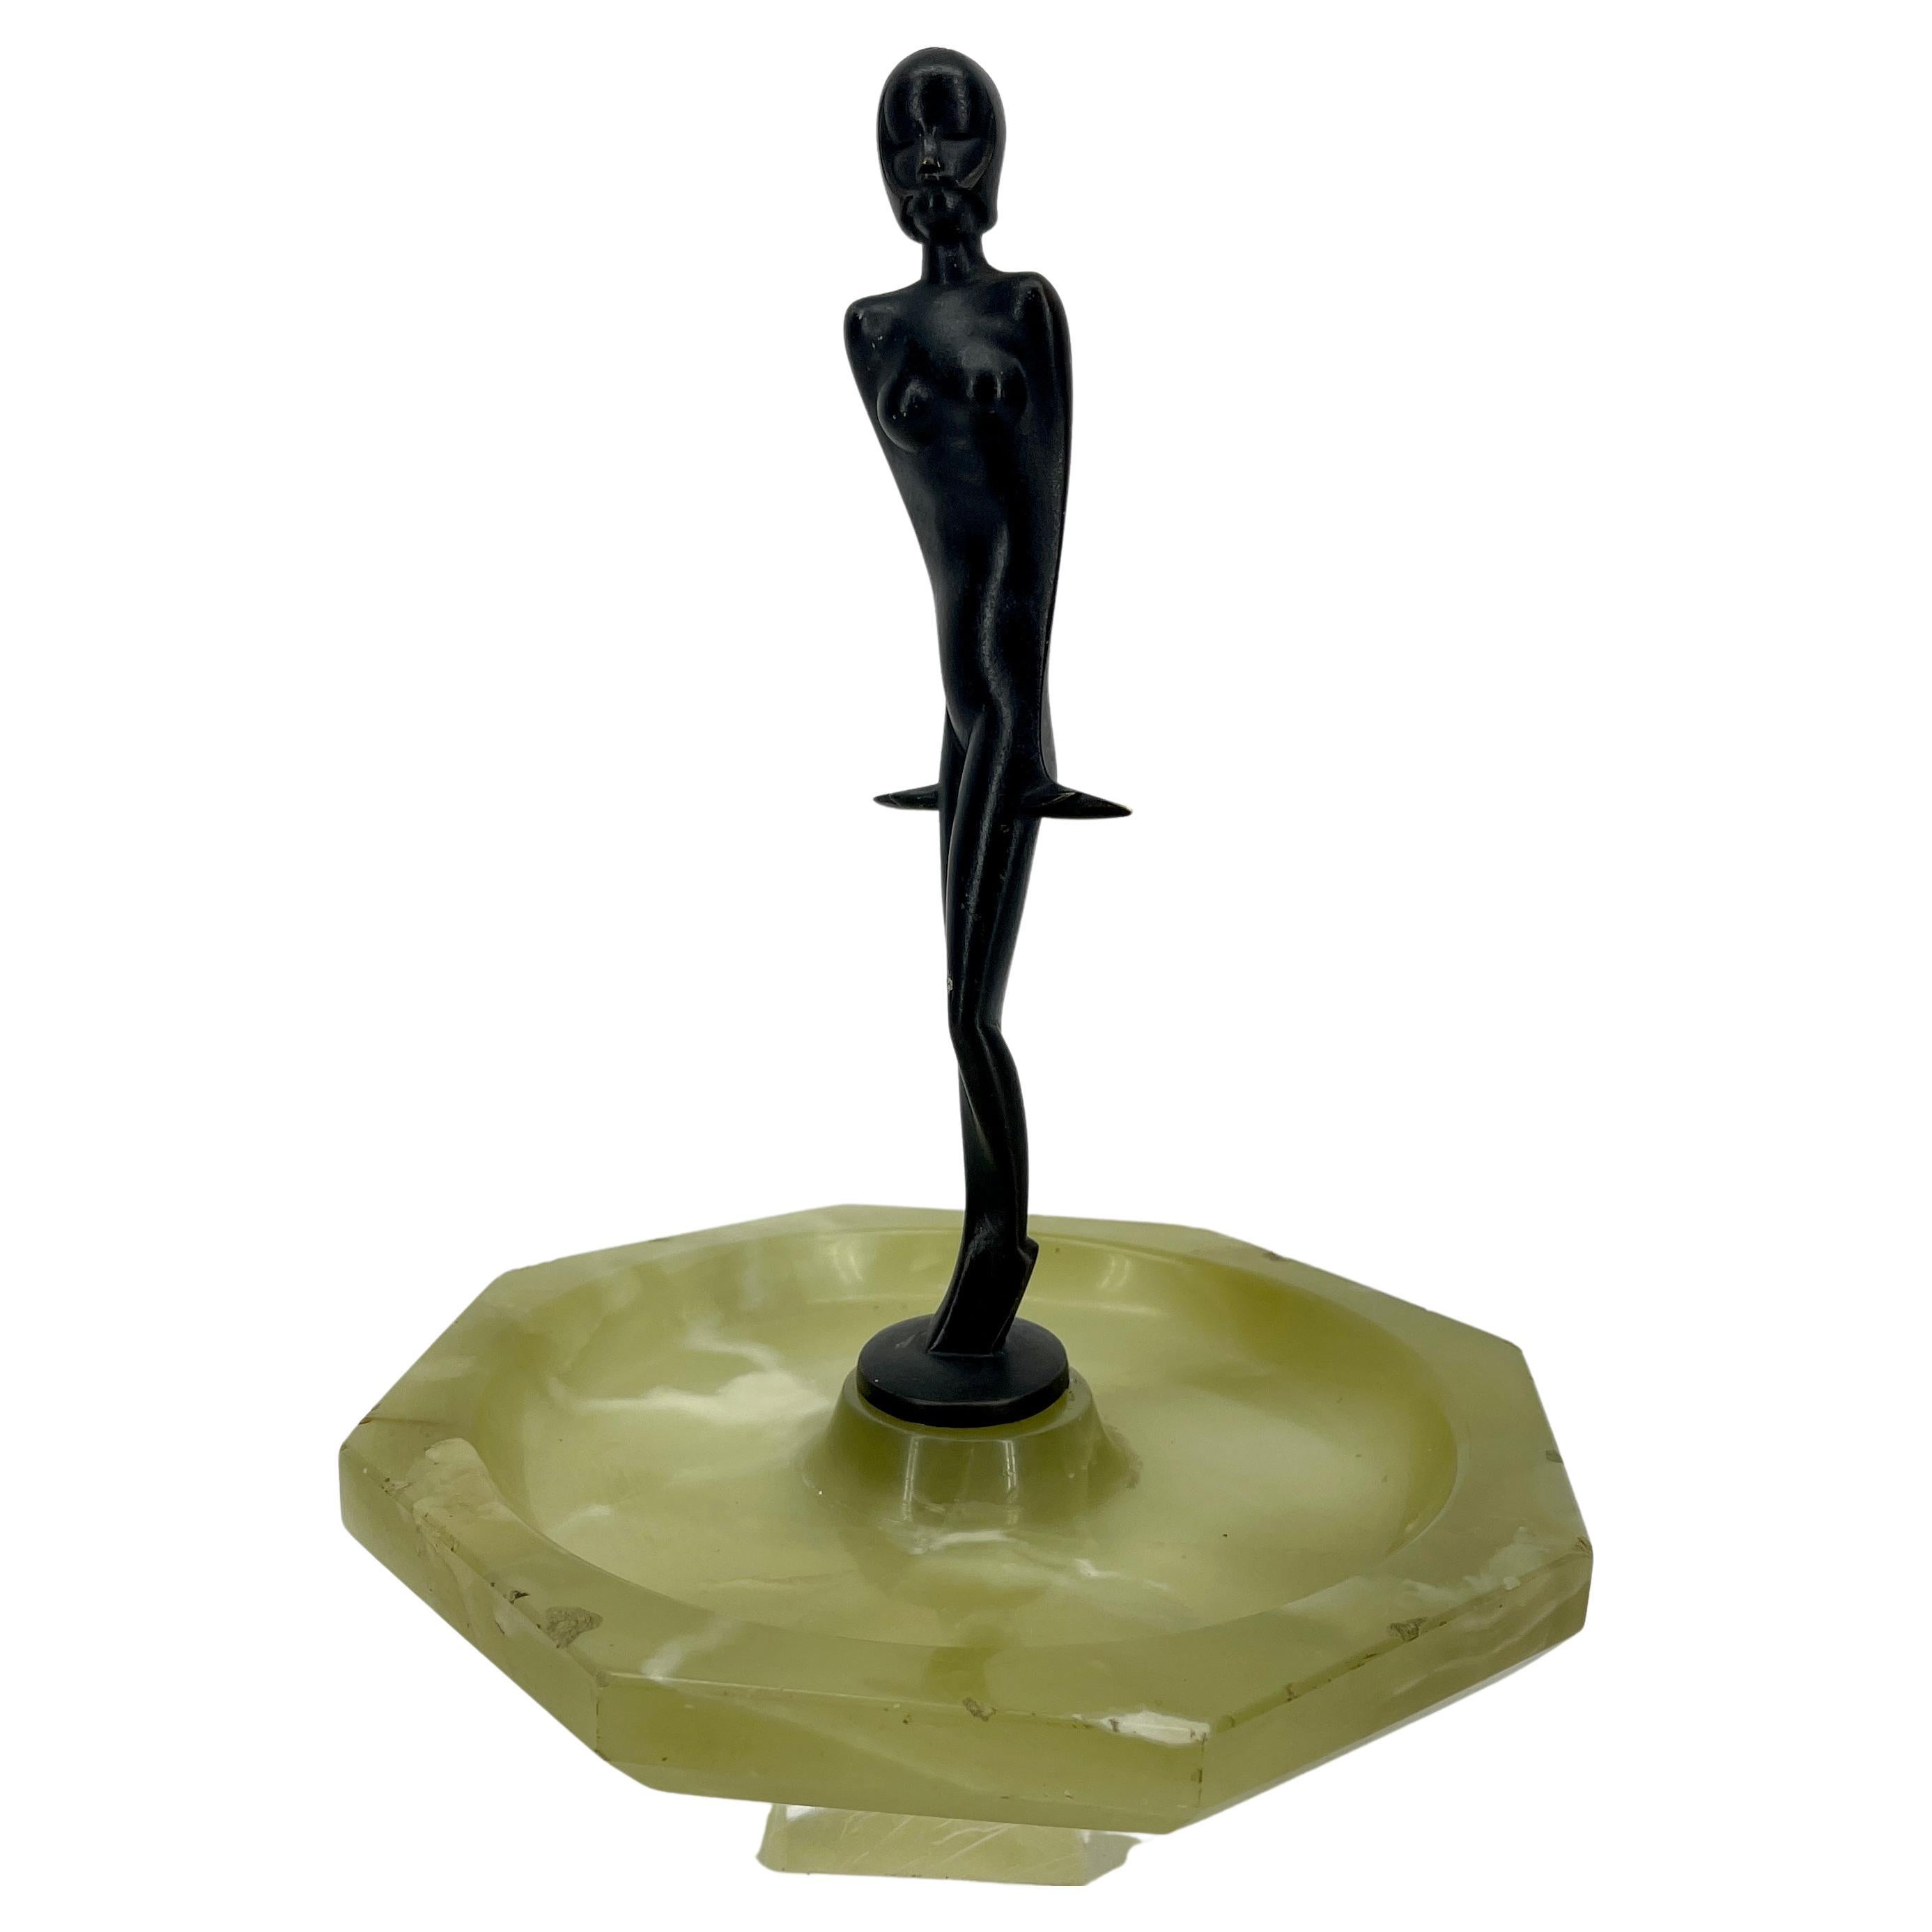 Grand cendrier Art Déco en onyx vert avec sculpture de femme nue en bronze.
Signé 